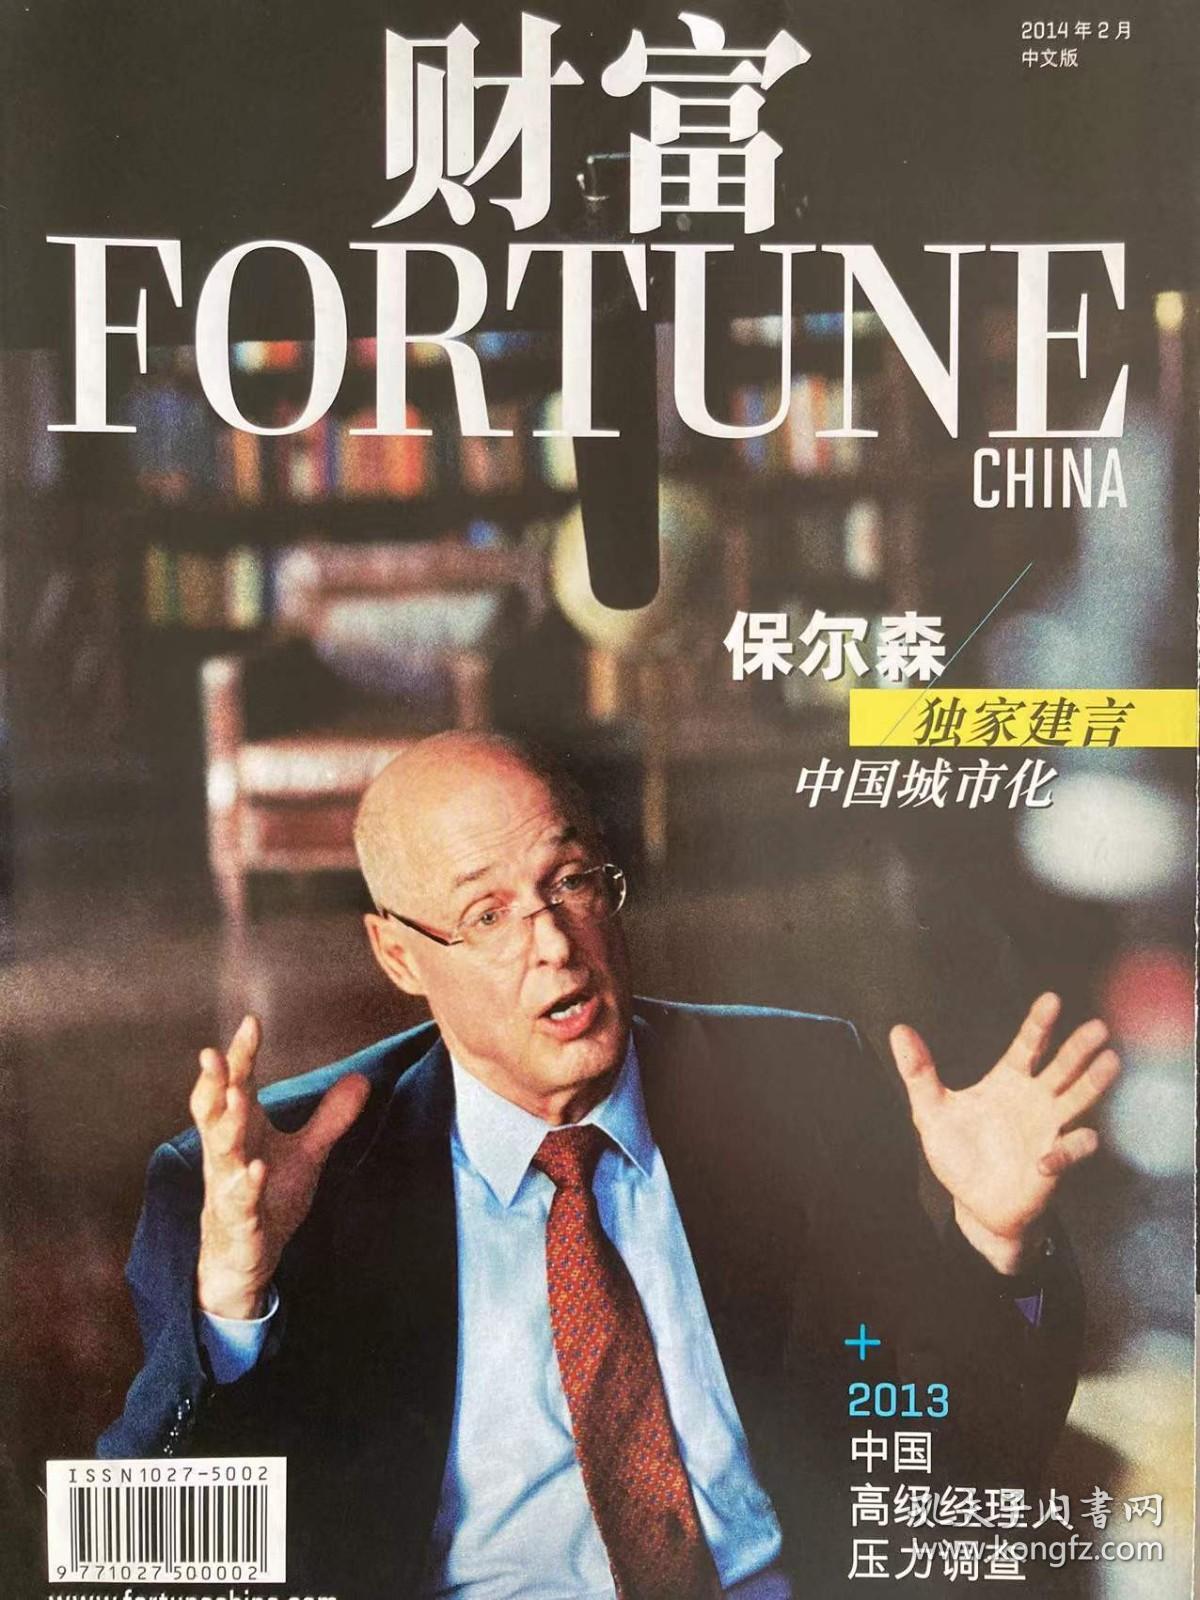 Fortune 财富中文版 - 2014年2月 总 234期